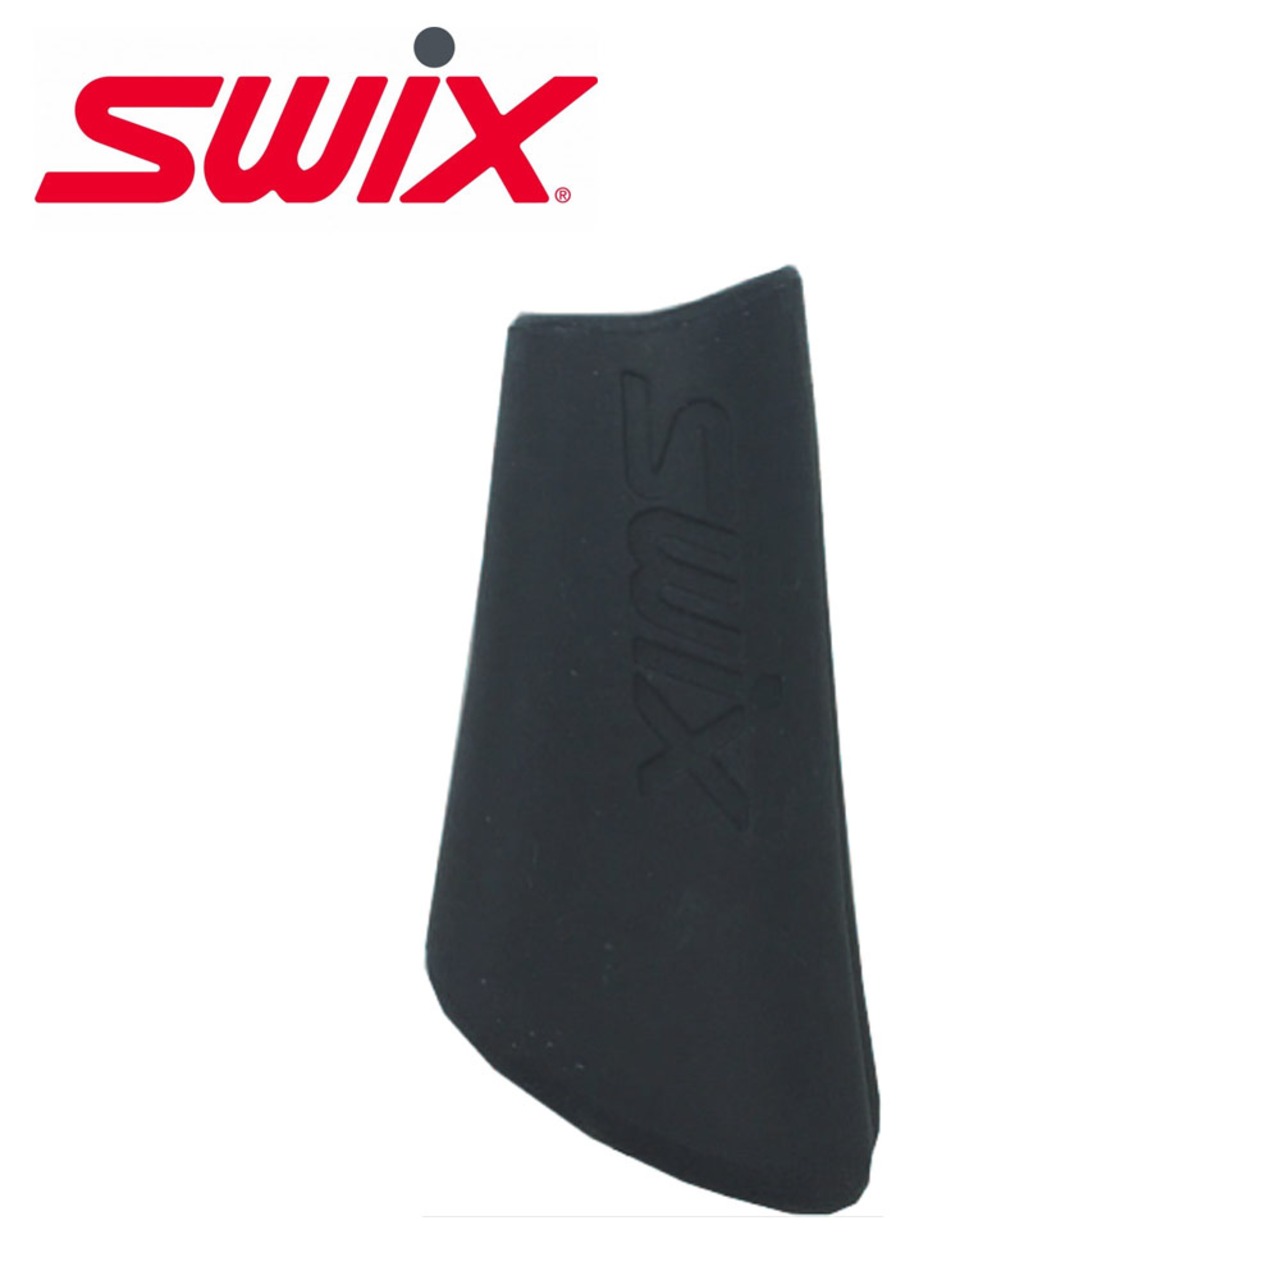 Swix スウィックス アグレッシブ用 石突ゴムMサイズ(RDNWRK) 交換用